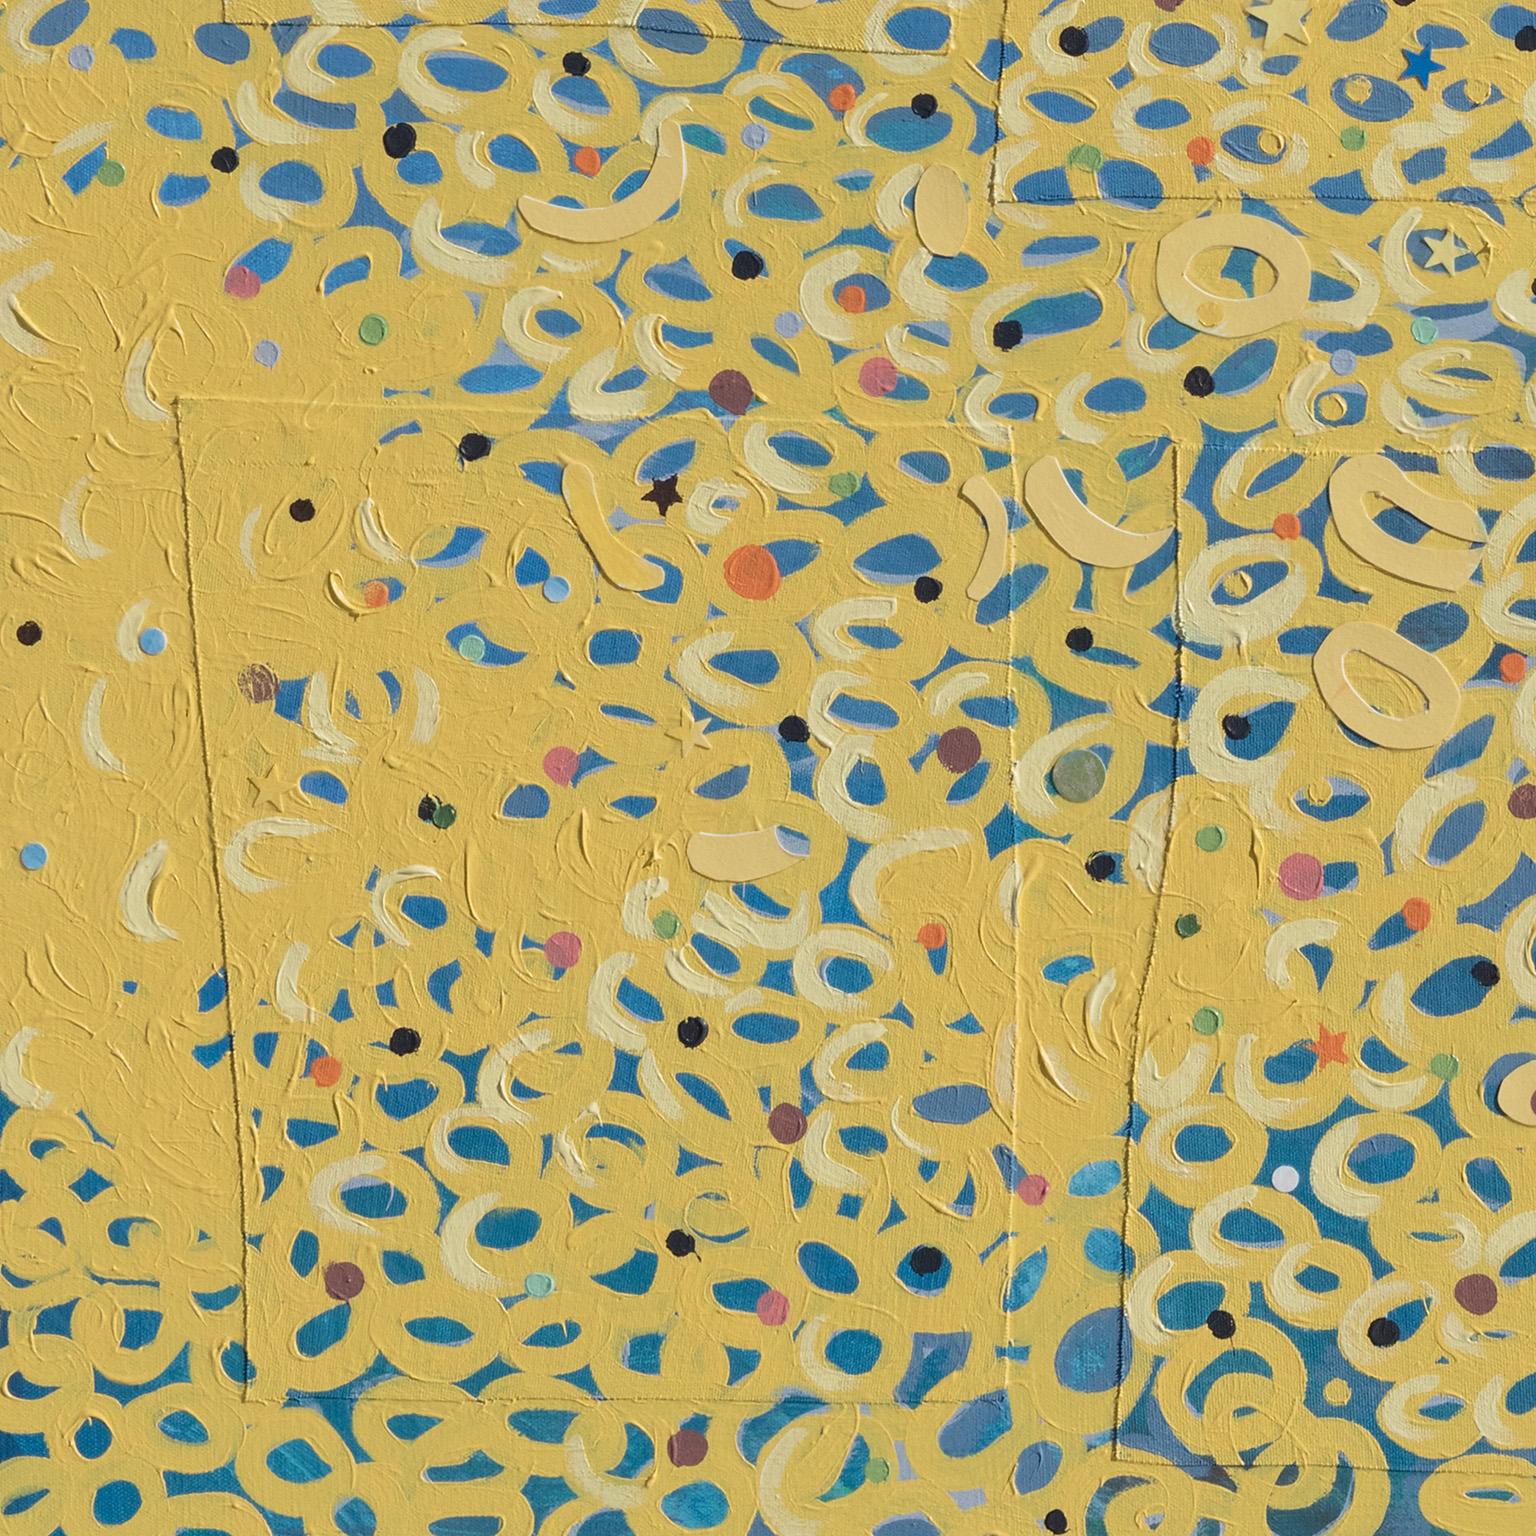 Spring Break Afternoon #2 ist ein 60 x 48 Zoll großes Werk aus Acryl und Collage auf Leinwand. Die Grundfarben sind Gelb und Blau, mit einem orangefarbenen Akzent. Das Bild ist verspielt, mit Hunderten von winzigen gelben Käufen, die auf dem blauen